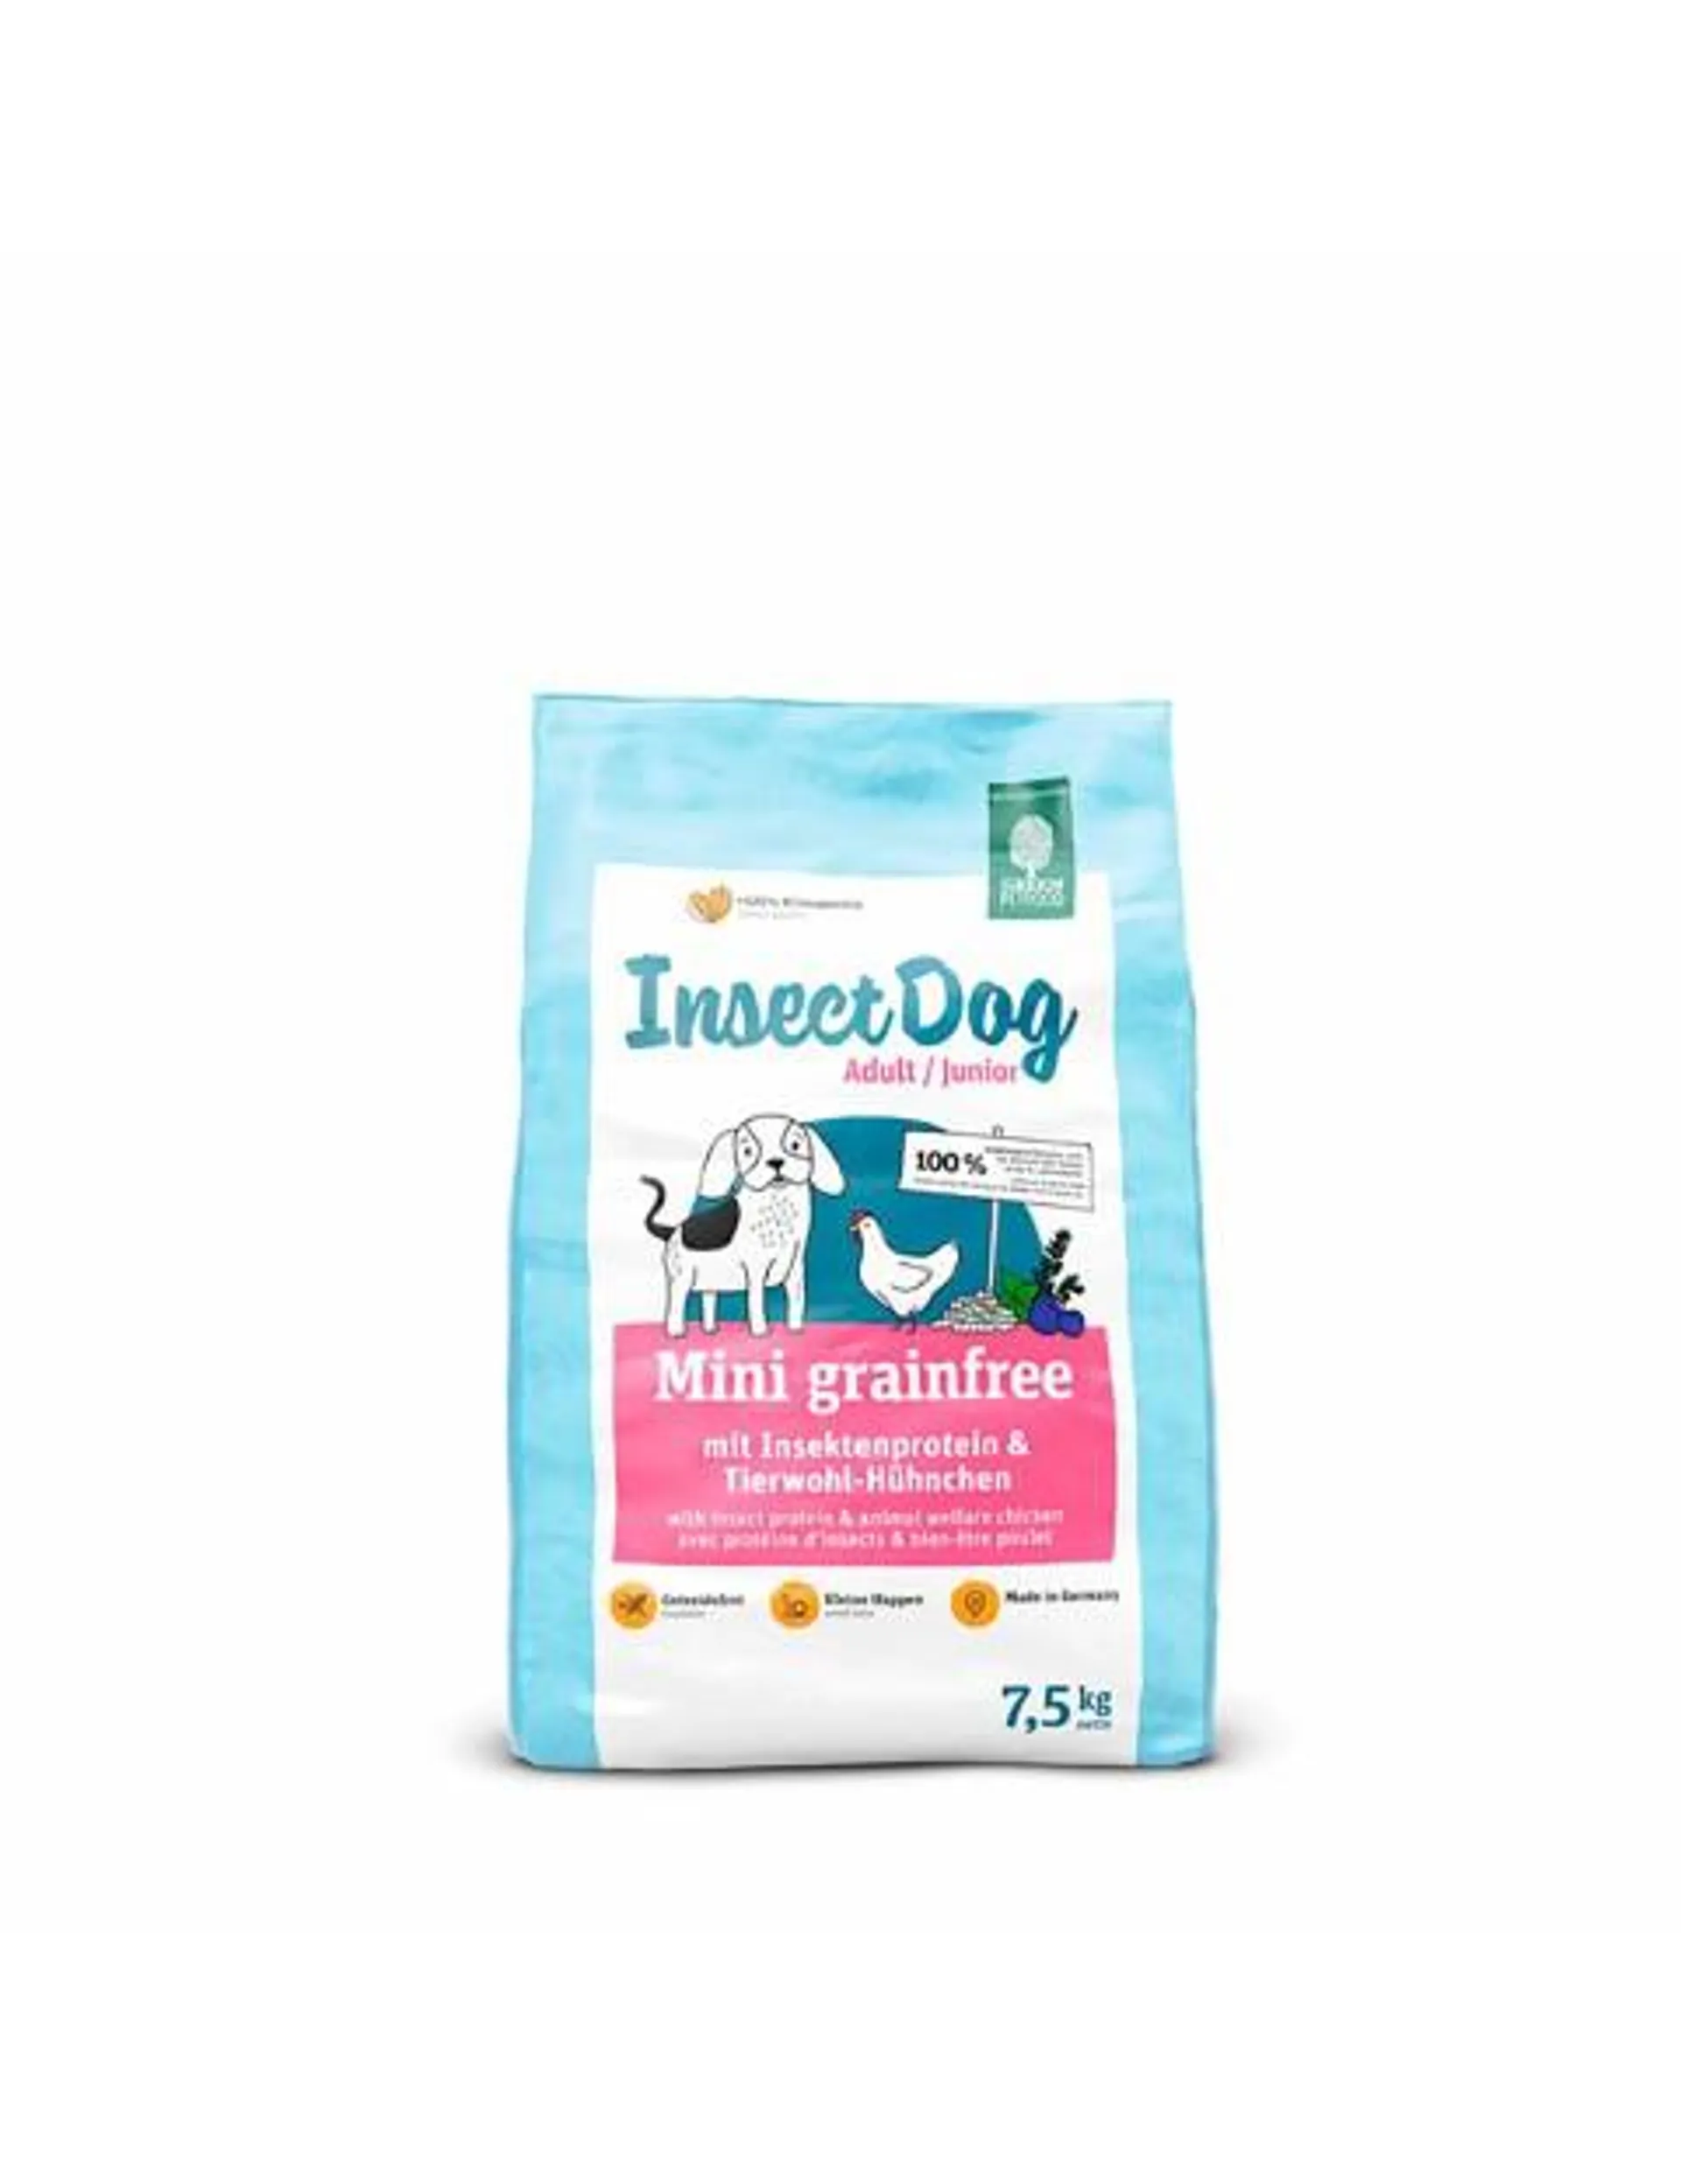 Pienso Insectdog sin cereales para perros de razas minis